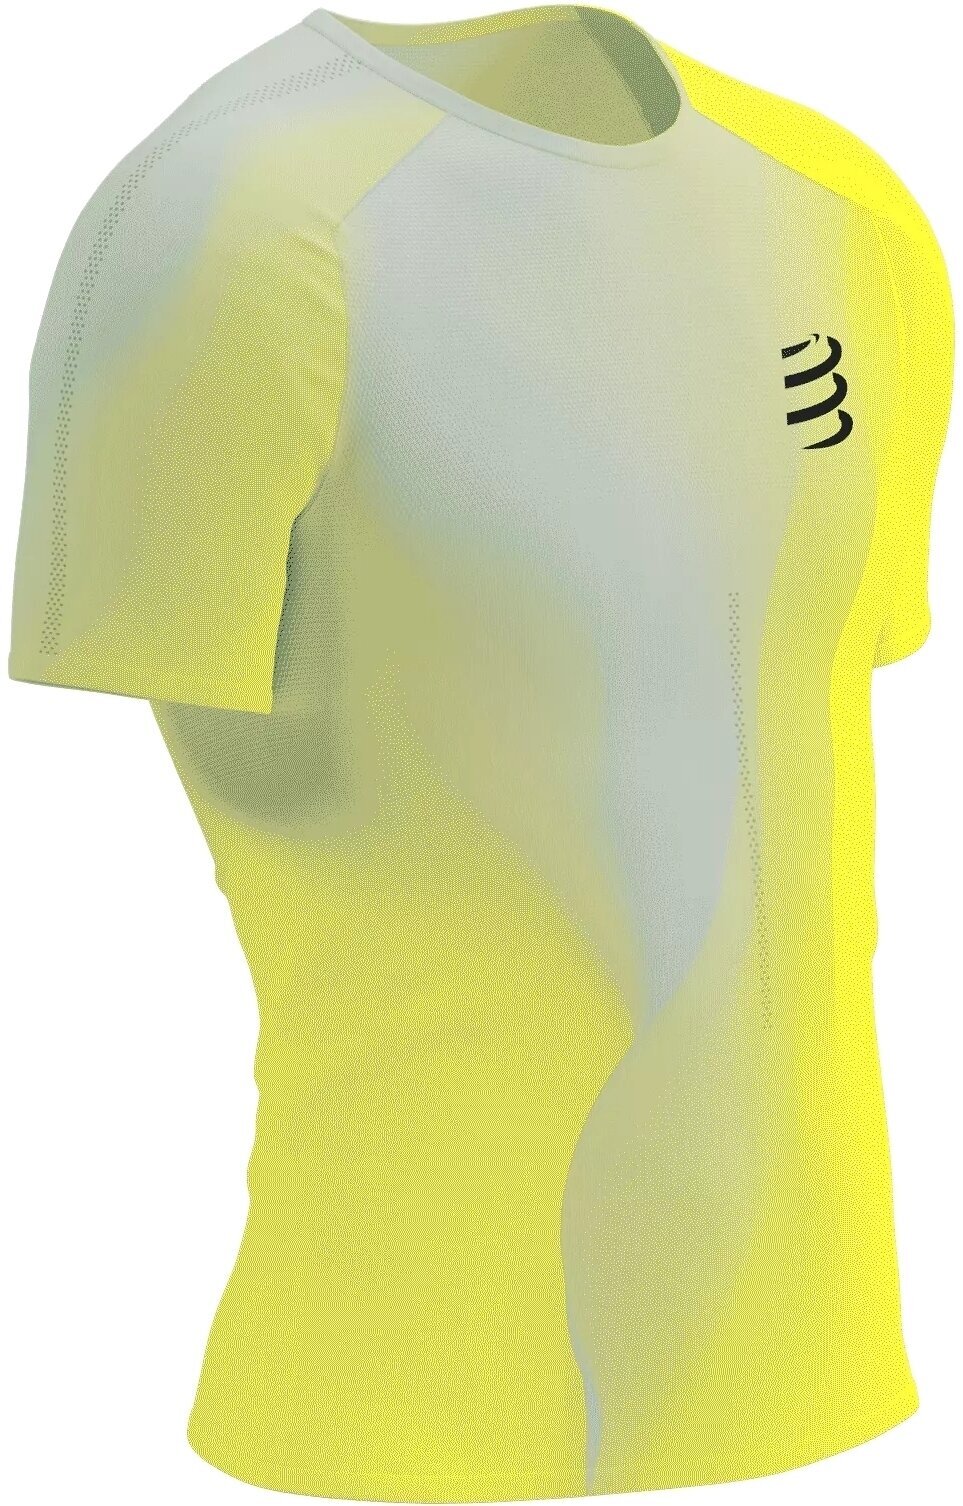 Laufshirt mit Kurzarm
 Compressport Performance SS Tshirt M Safety Yellow/White/Black L Laufshirt mit Kurzarm